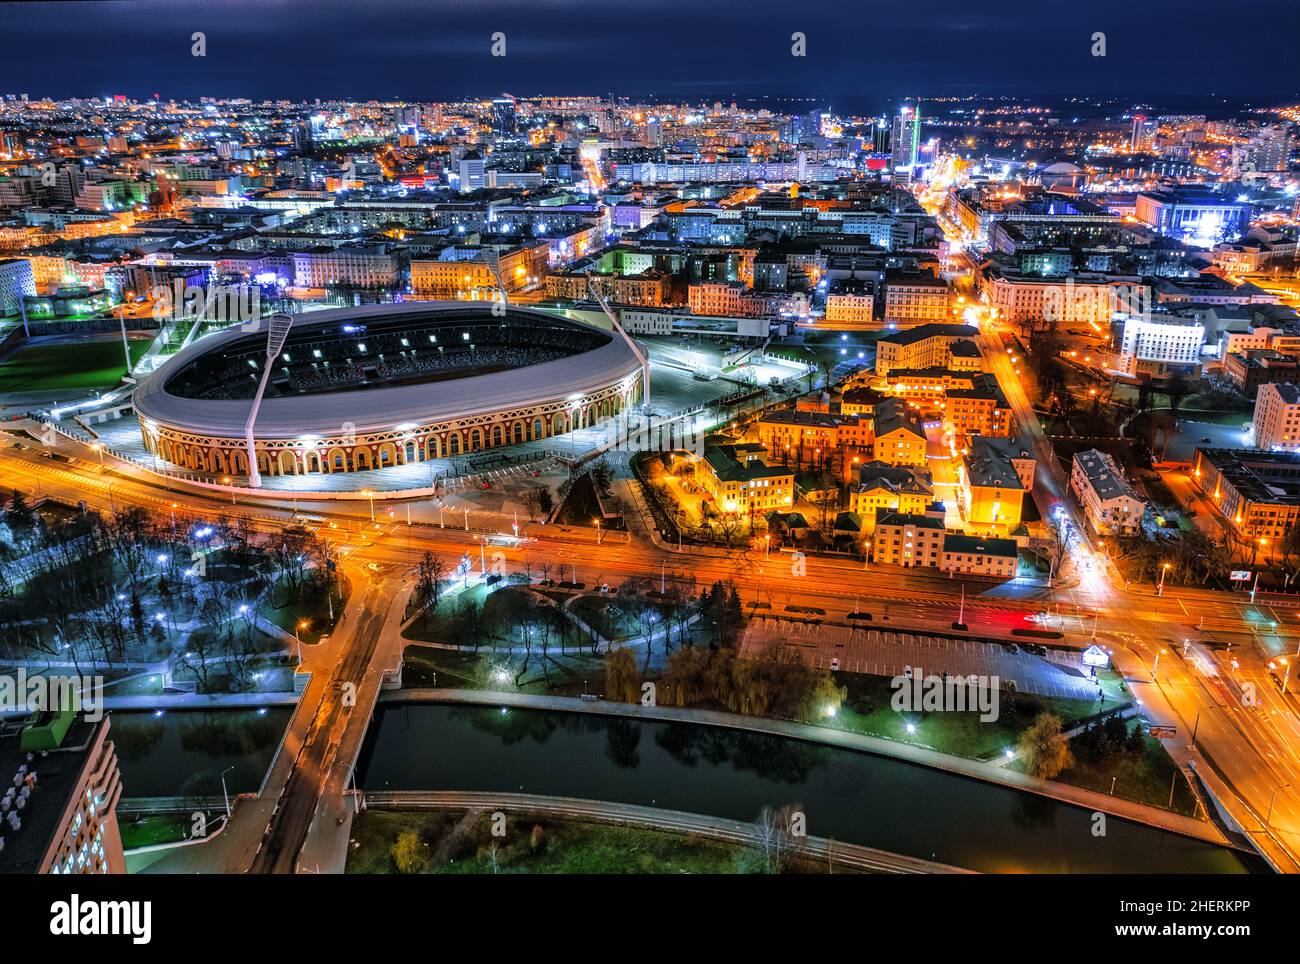 Une vue aérienne de nuit sur le stade Dinamo à Minsk, en Biélorussie.Un stade de football polyvalent et sportif tiré d'un paysage urbain de drone Banque D'Images